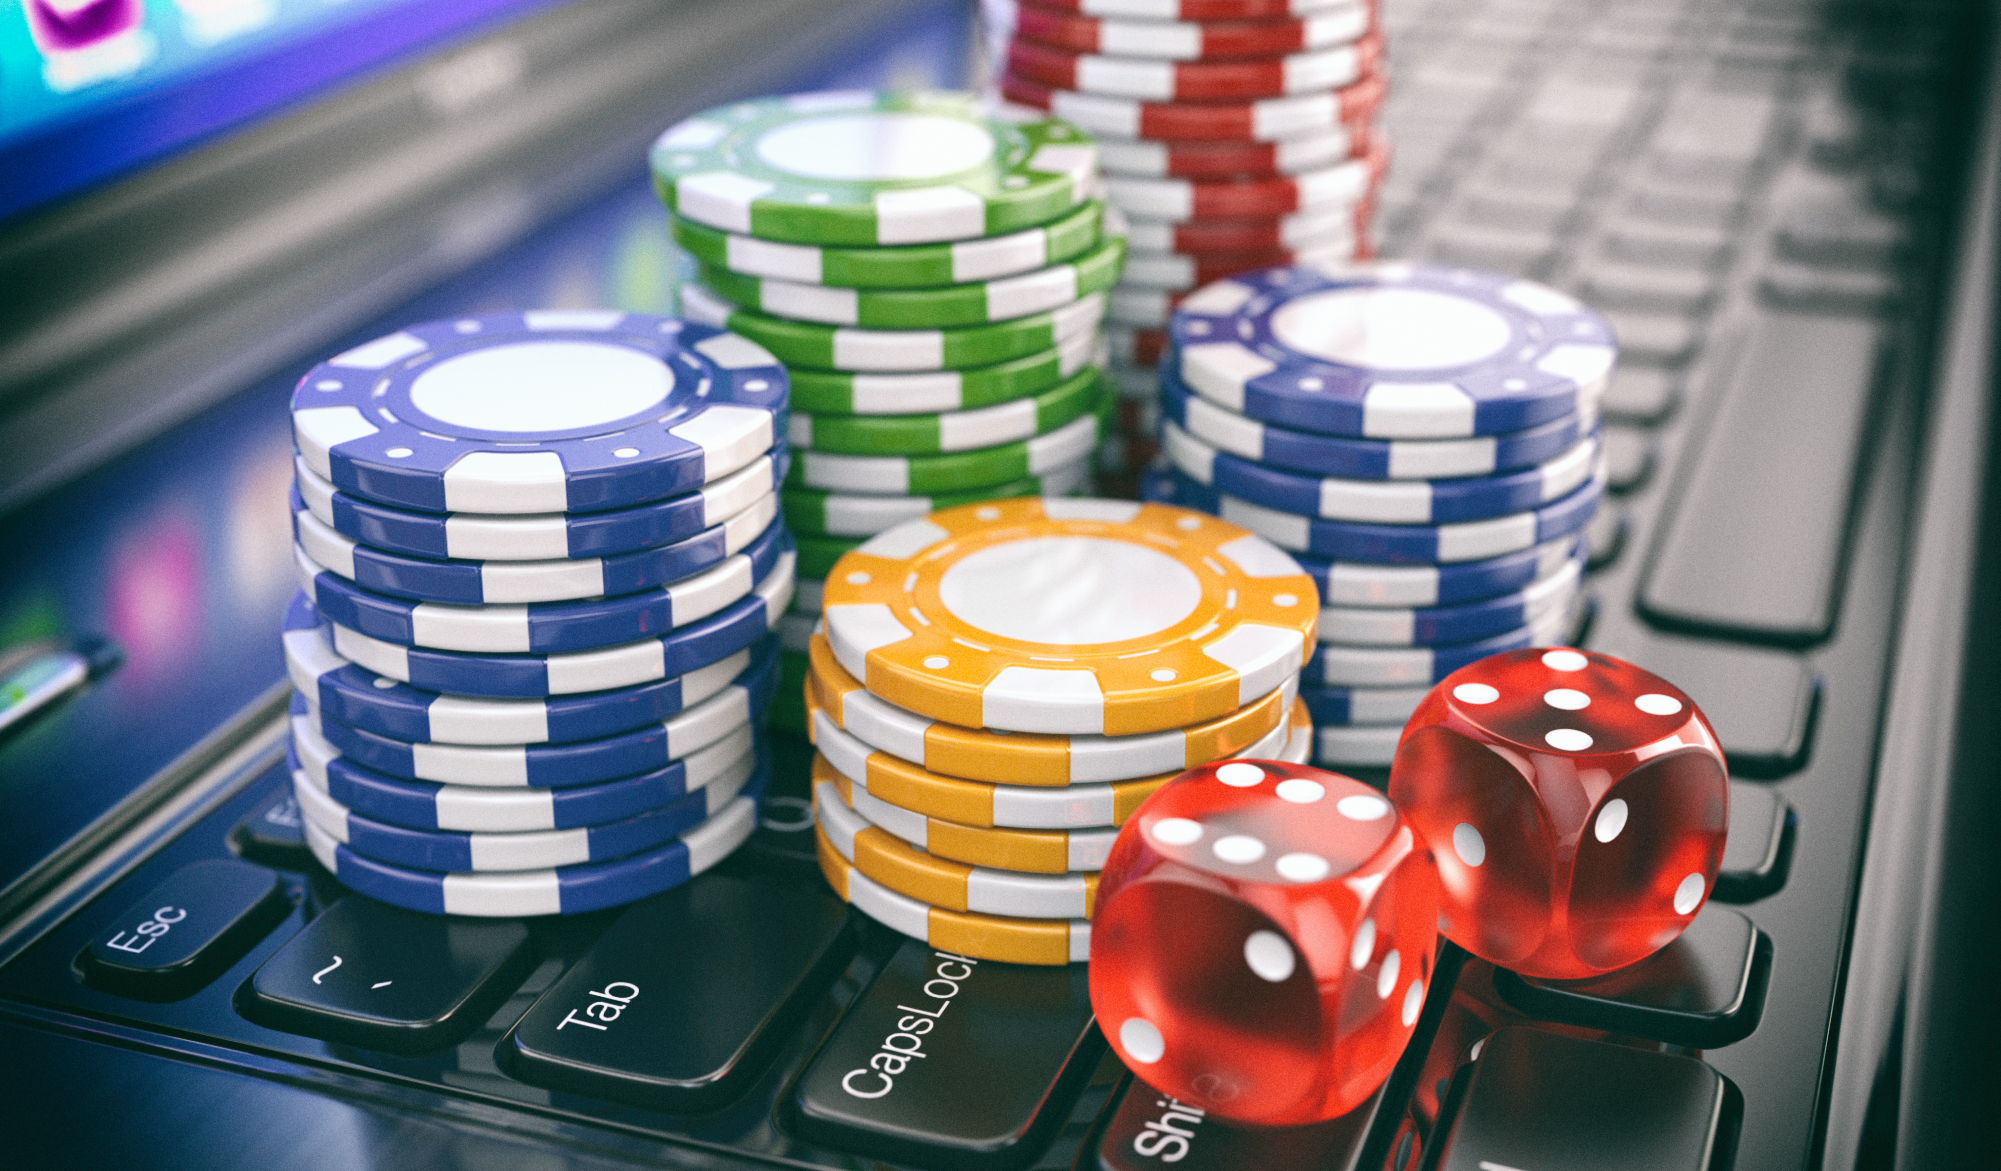 Игровые автоматы в интернет казино: как найти площадку с бесплатными онлайн слотами?